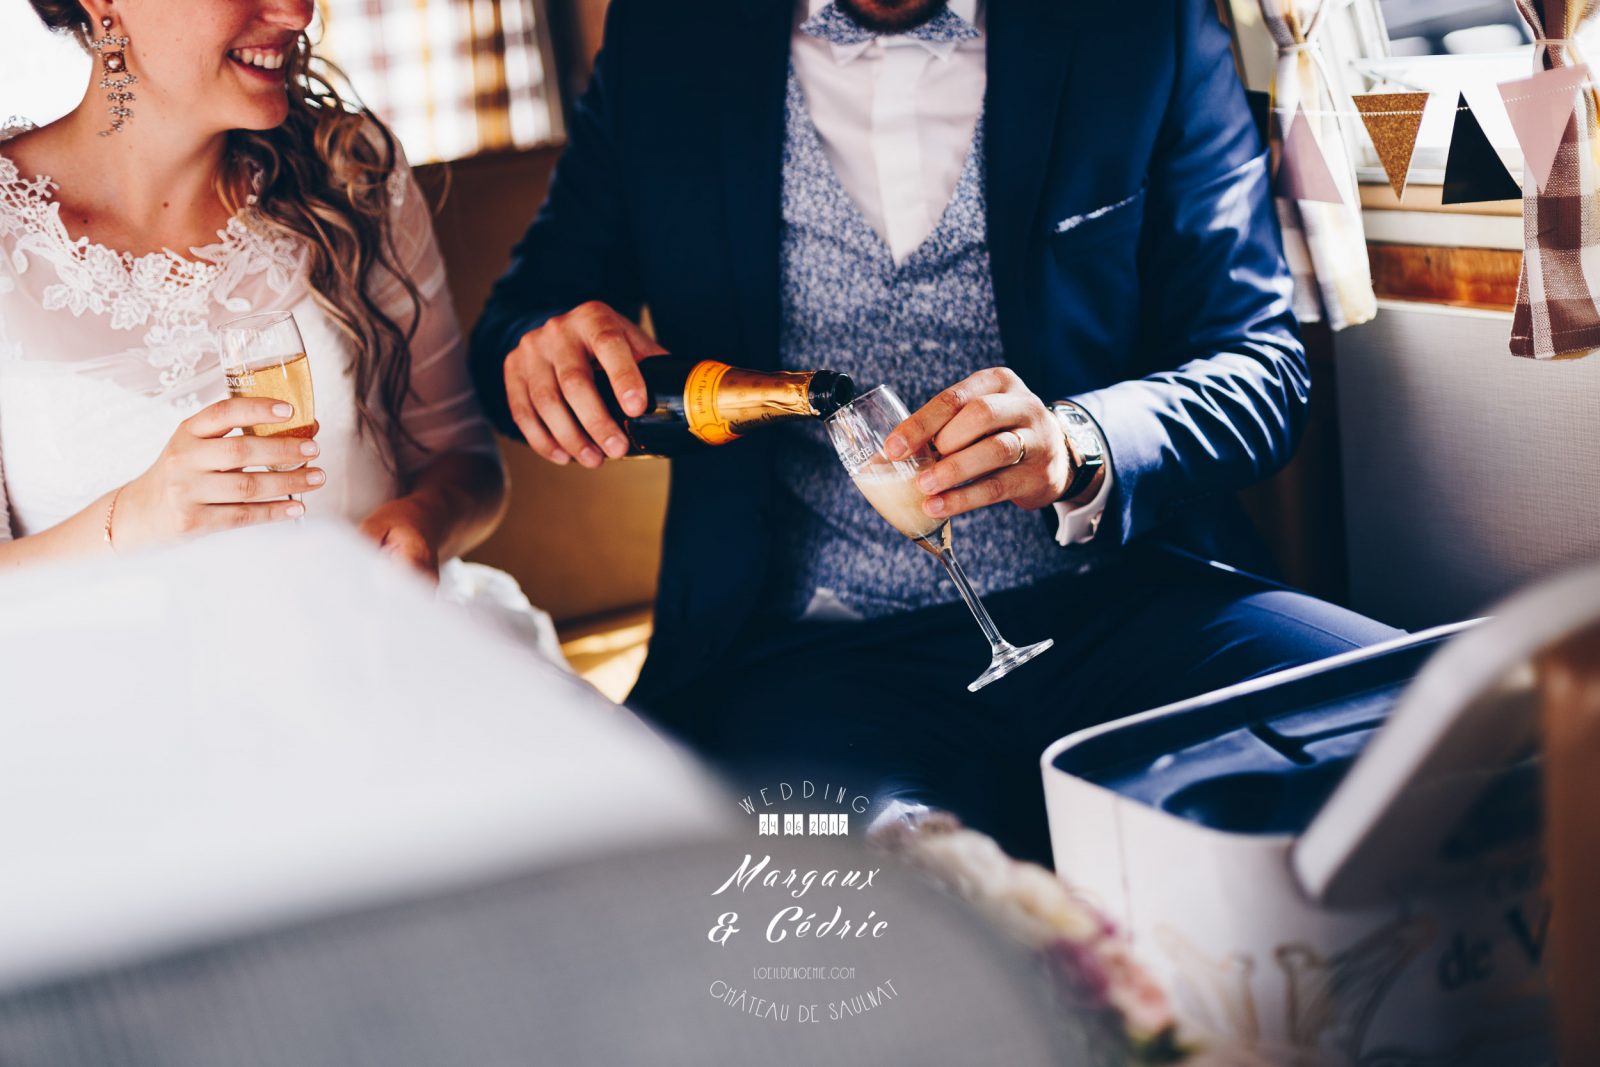 mariage chic et gourmand, décoration et détails chics de mariage, belle photo soirée de mariage, L'oeil de Noémie meilleur photographe de mariage en Auvergne